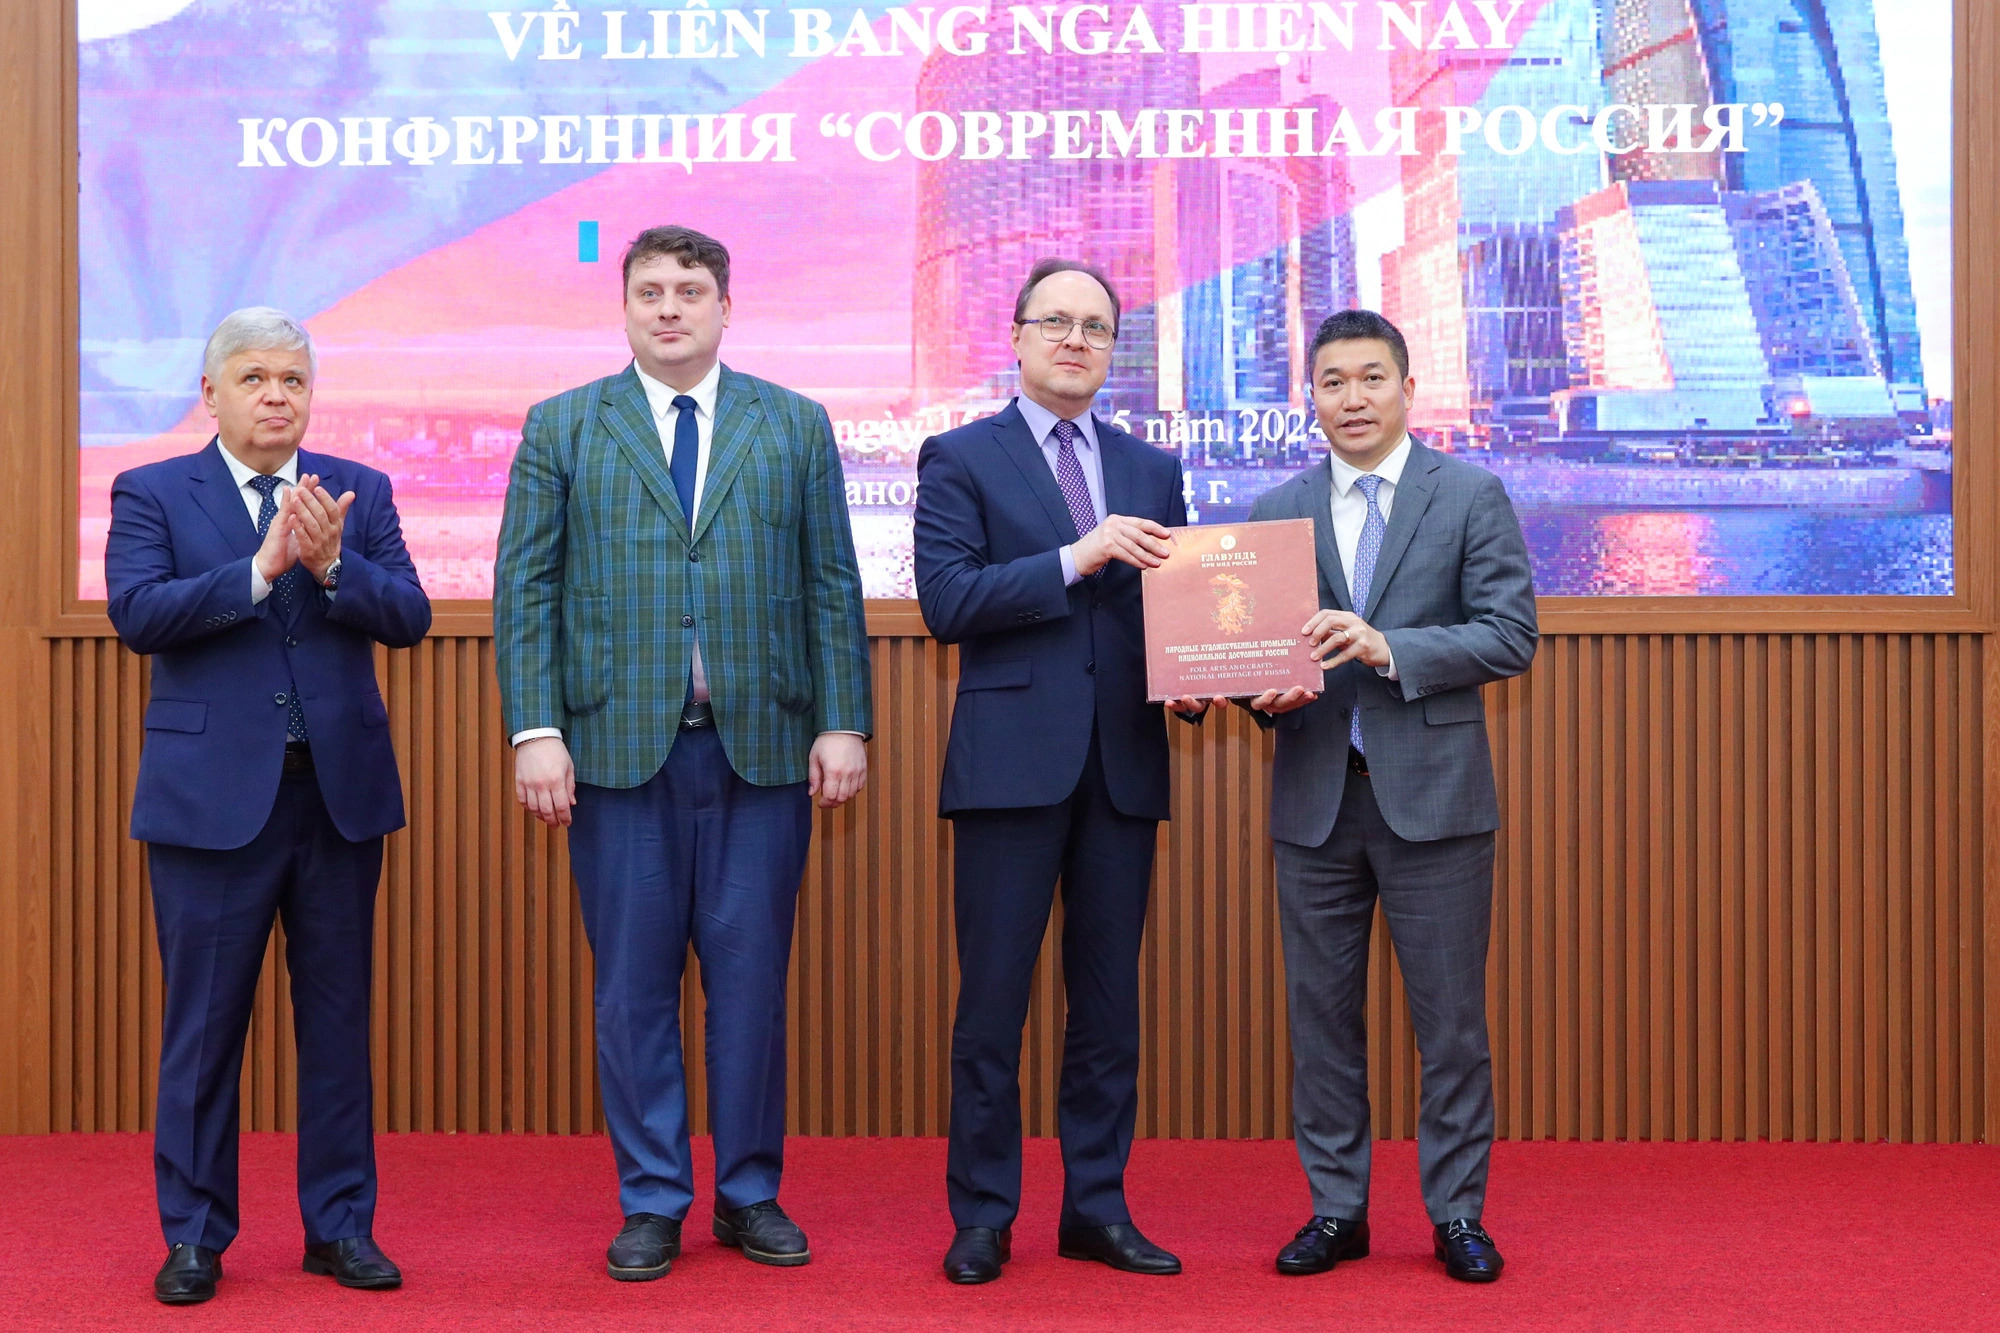 Russia endorses Vietnam’s future participation in BRICS: Russian ambassador